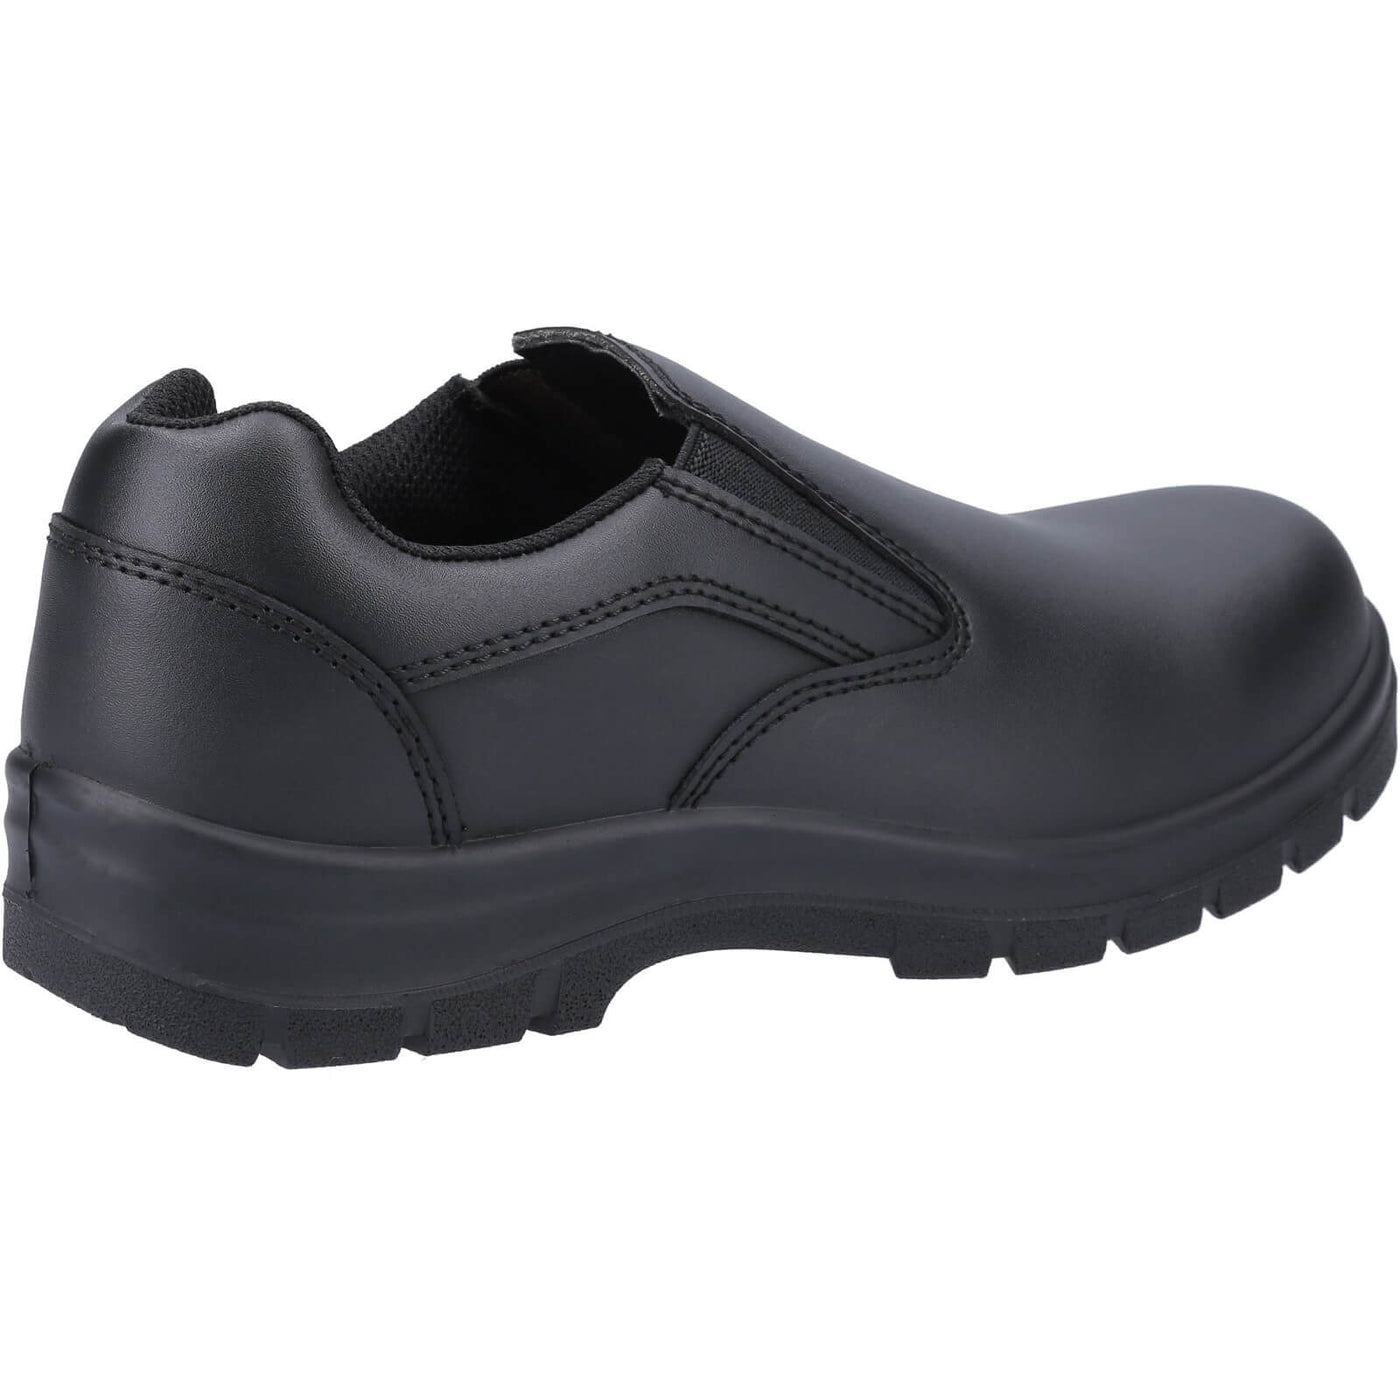 Amblers AS716C Safety Shoes Black 2#colour_black